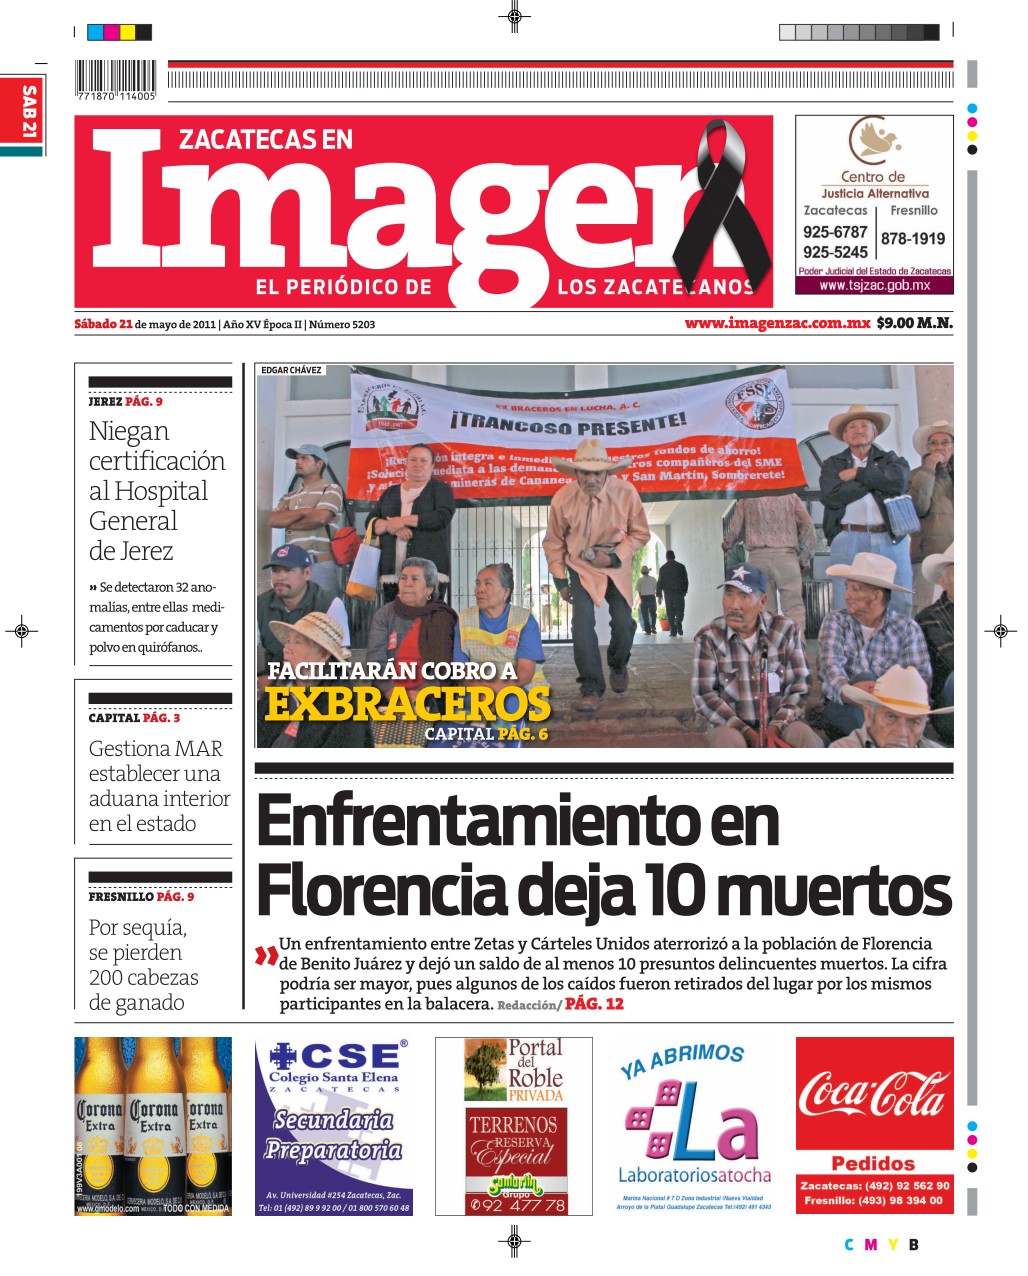 Imagen Zacatecas edición del 21 de Mayo 2011